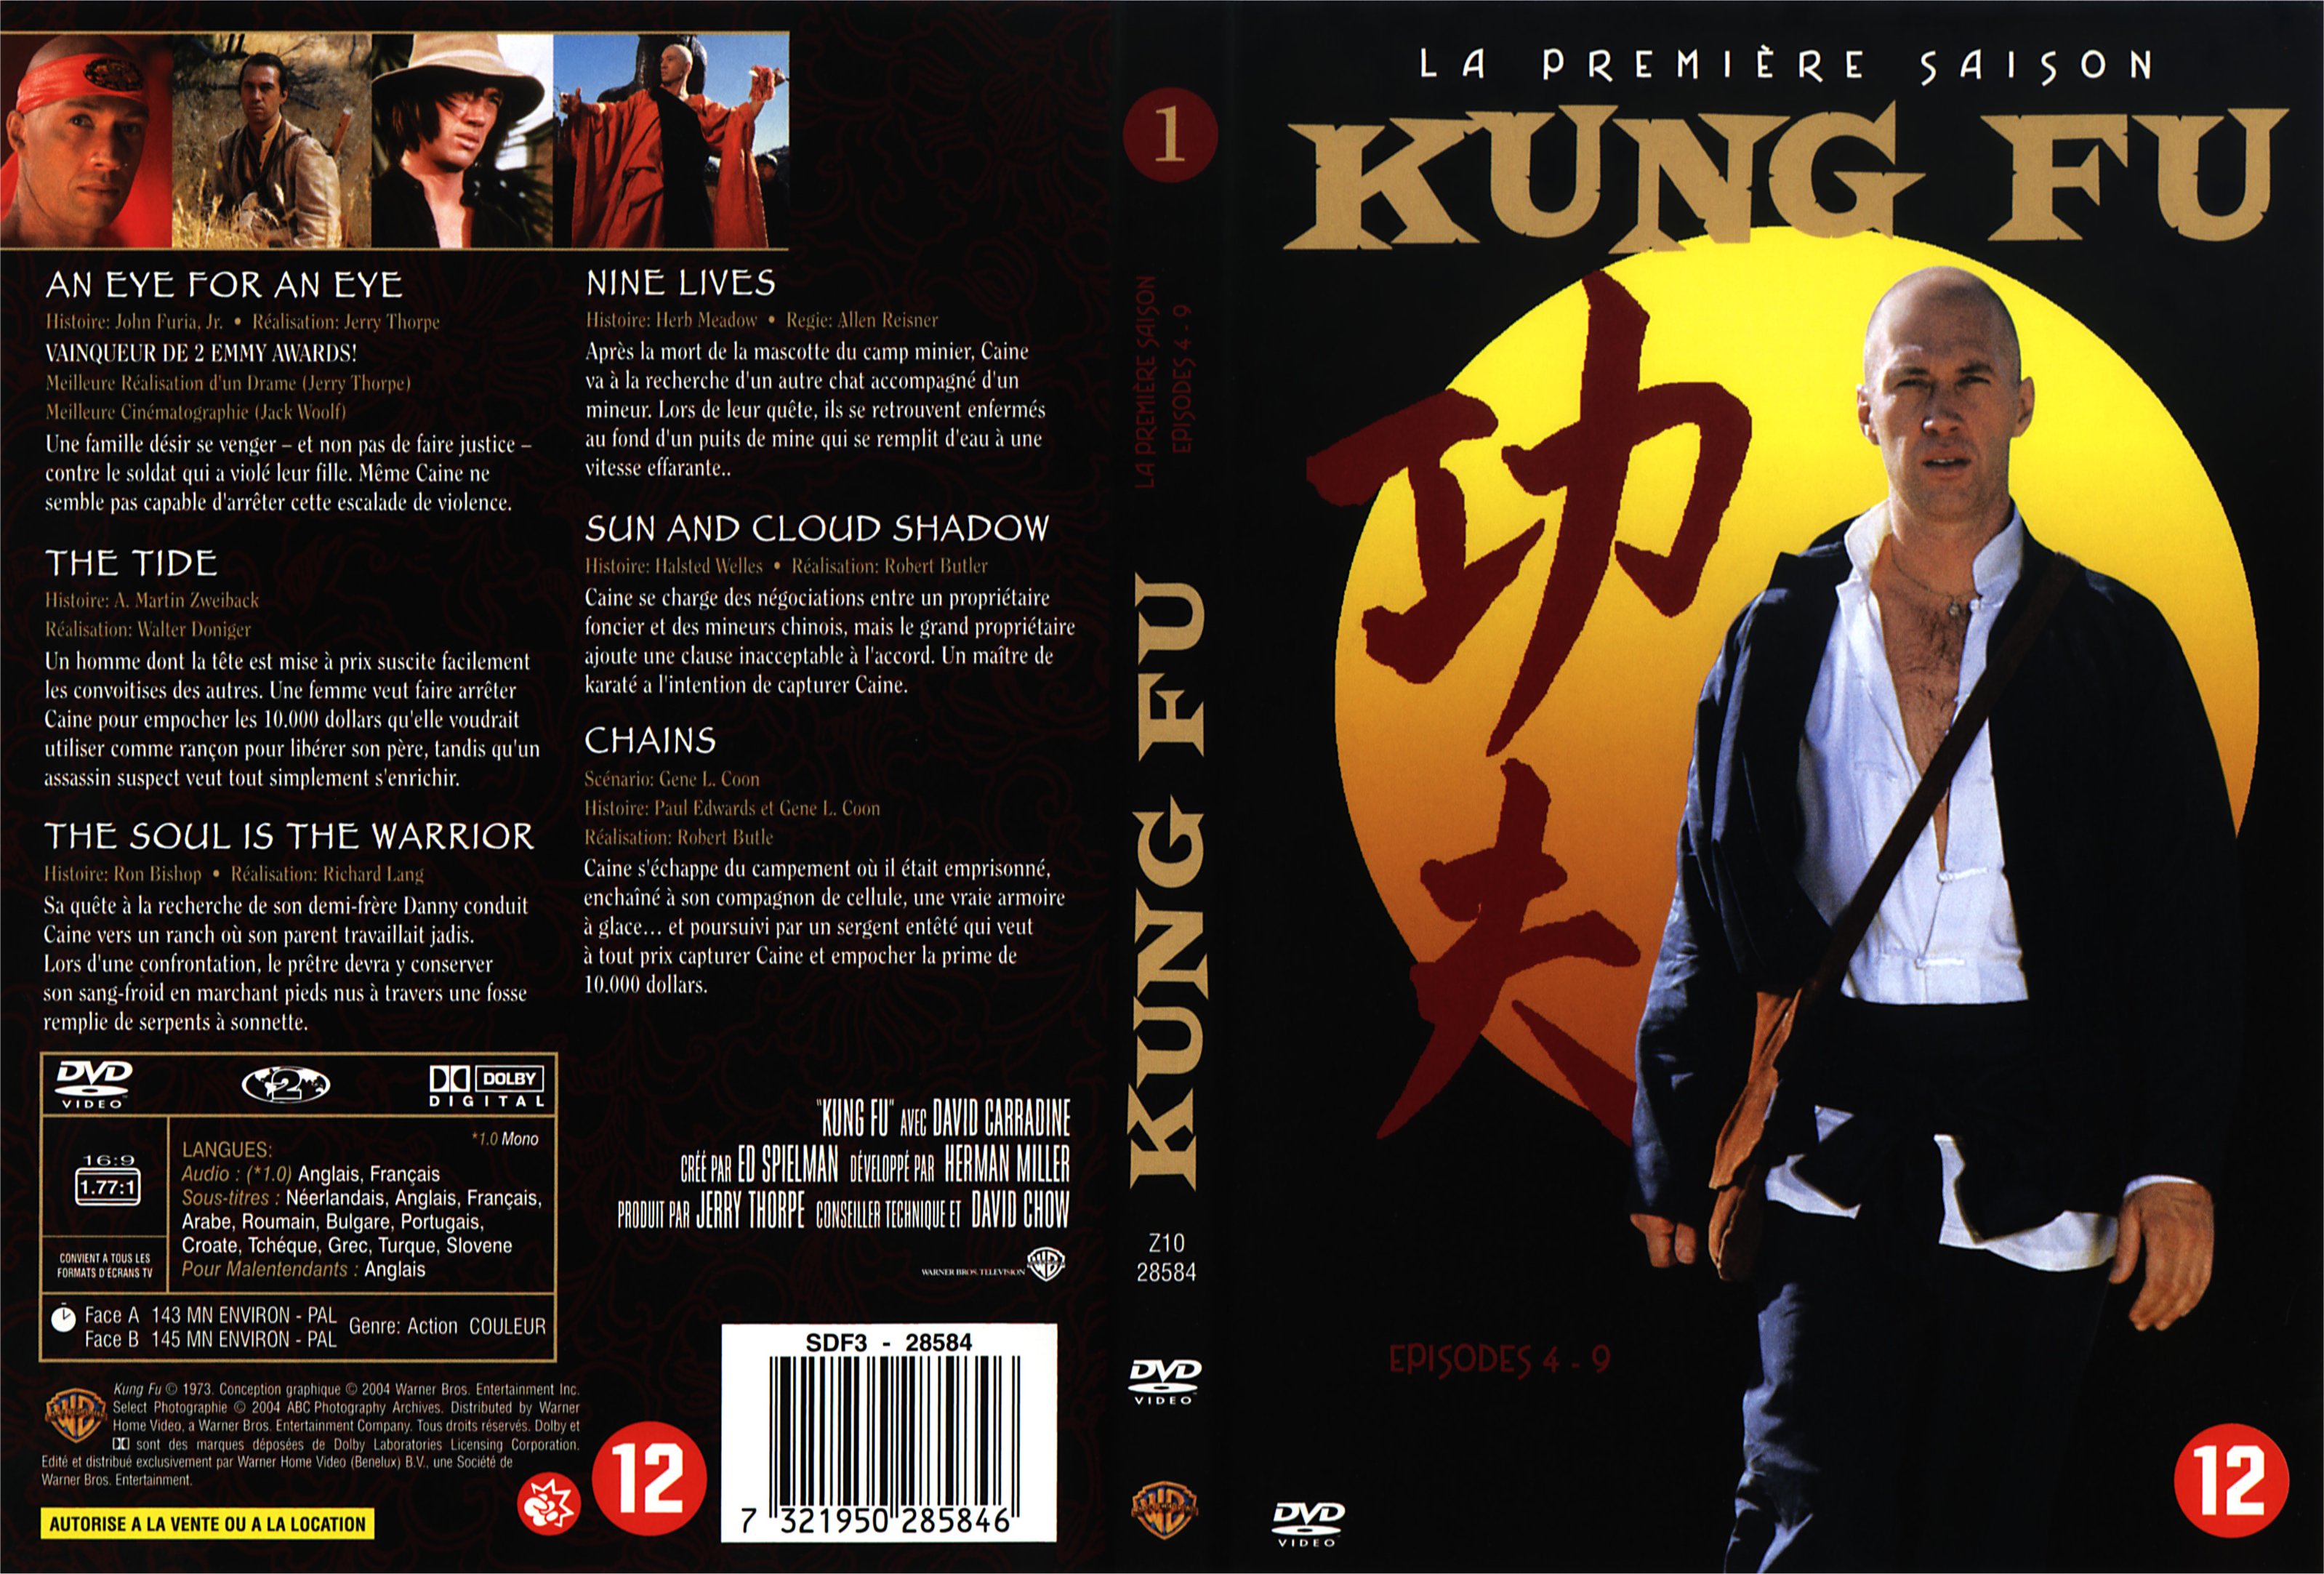 Jaquette DVD Kung fu saison 1 vol 2